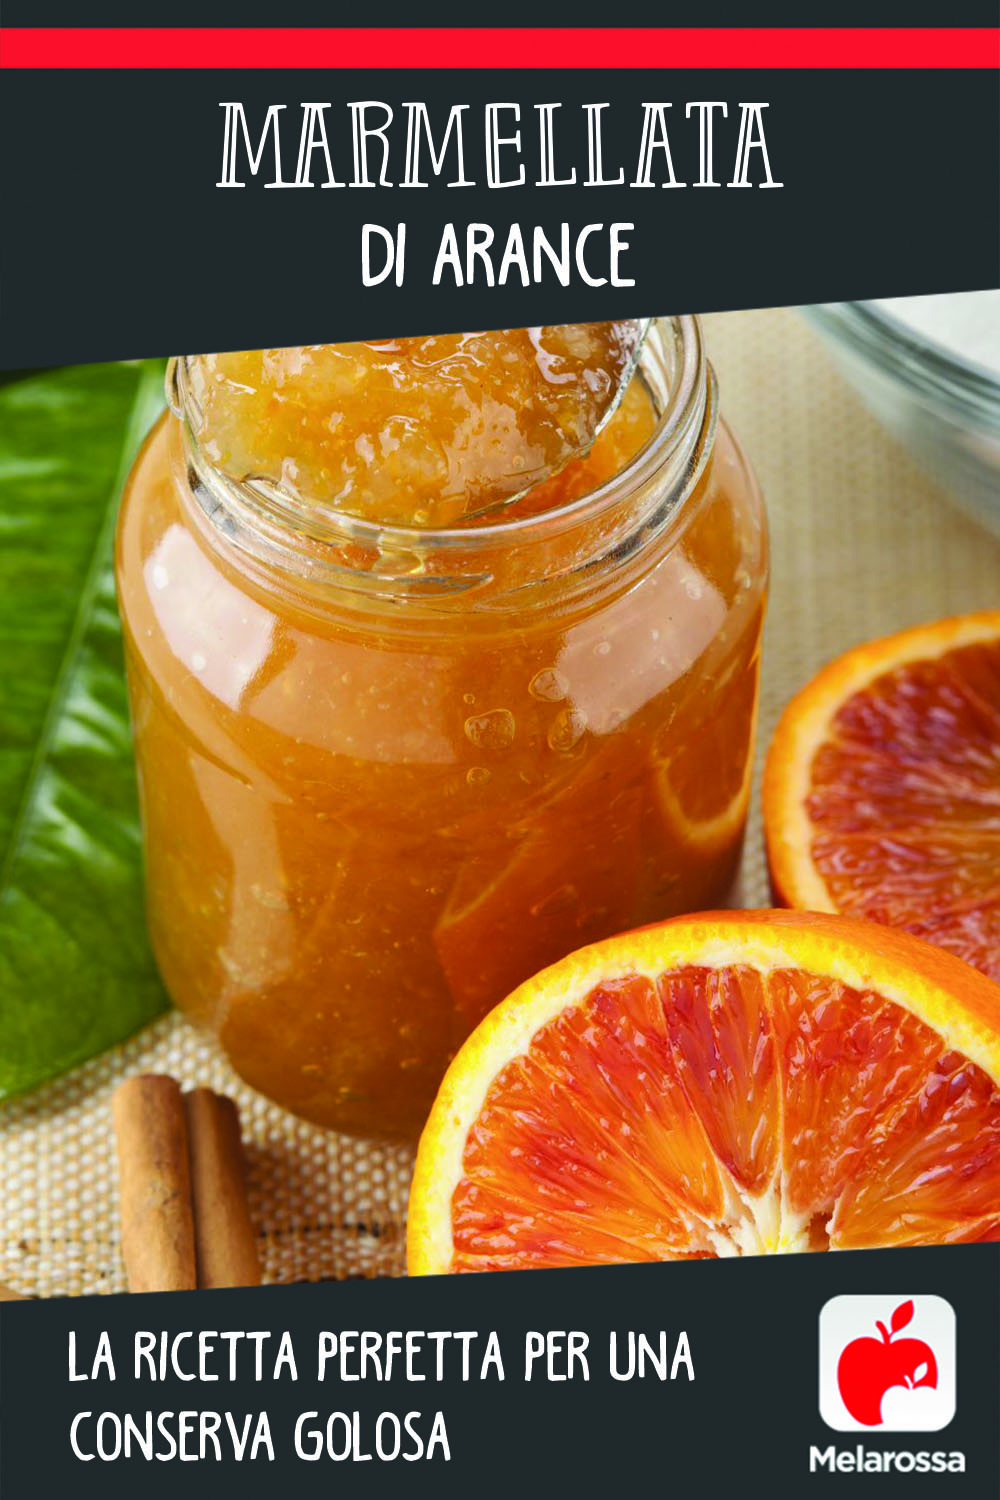 Marmellata di arance: la ricetta perfetta per una conserva golosa